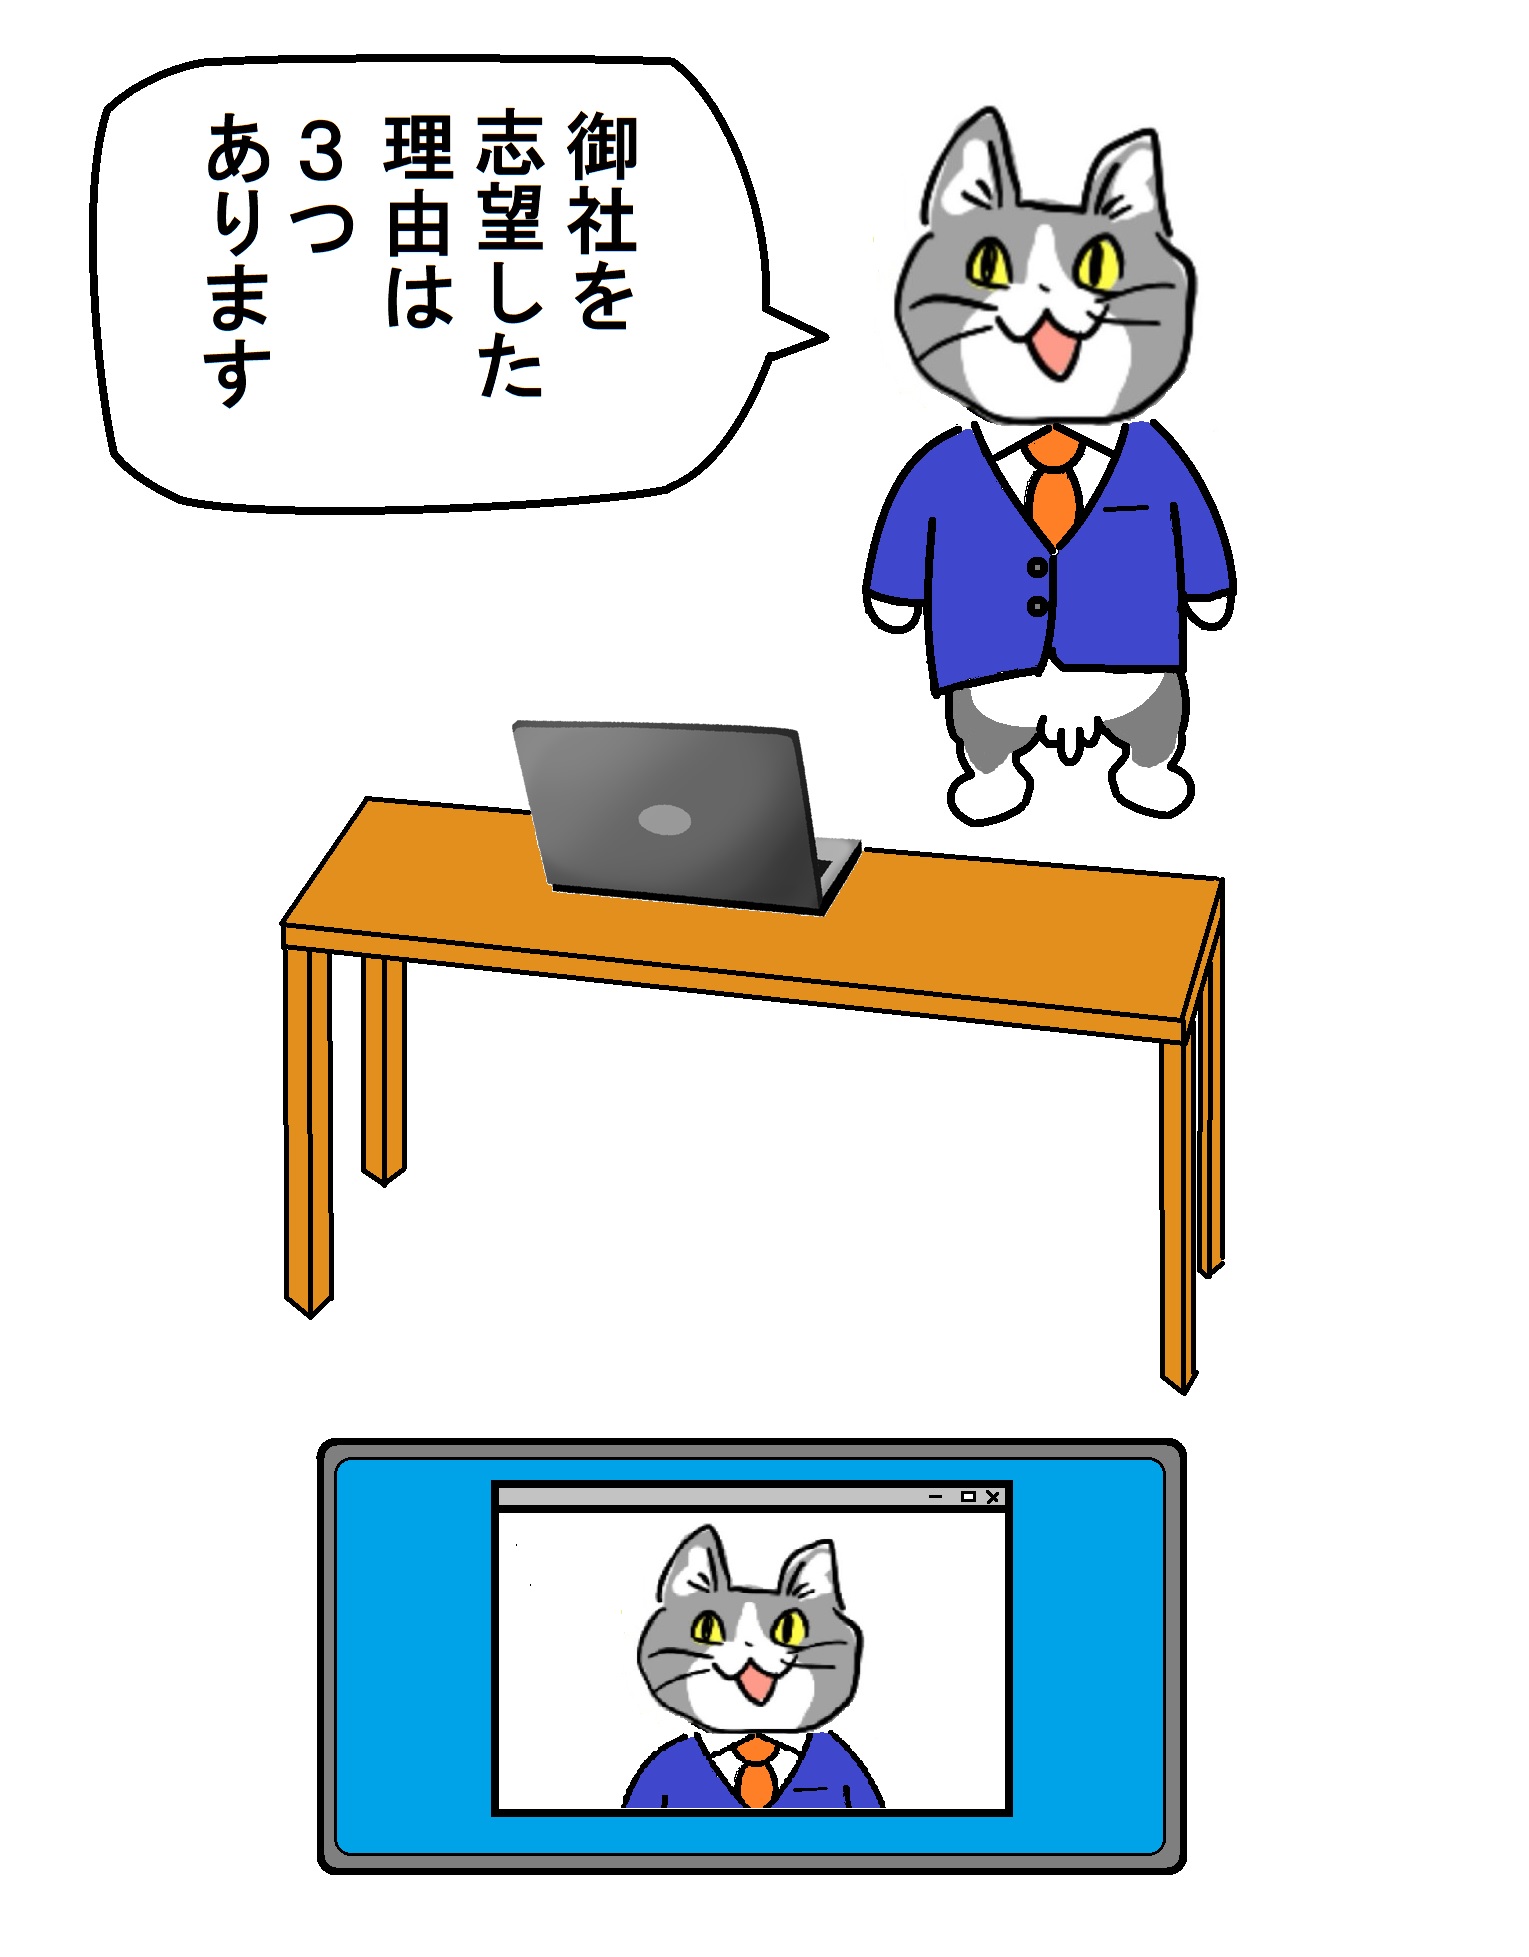 マーロン栗野 on Twitter: "WEB面接を受ける現場猫 #現場猫 https://t.co/zY1gee2THw" / Twitter